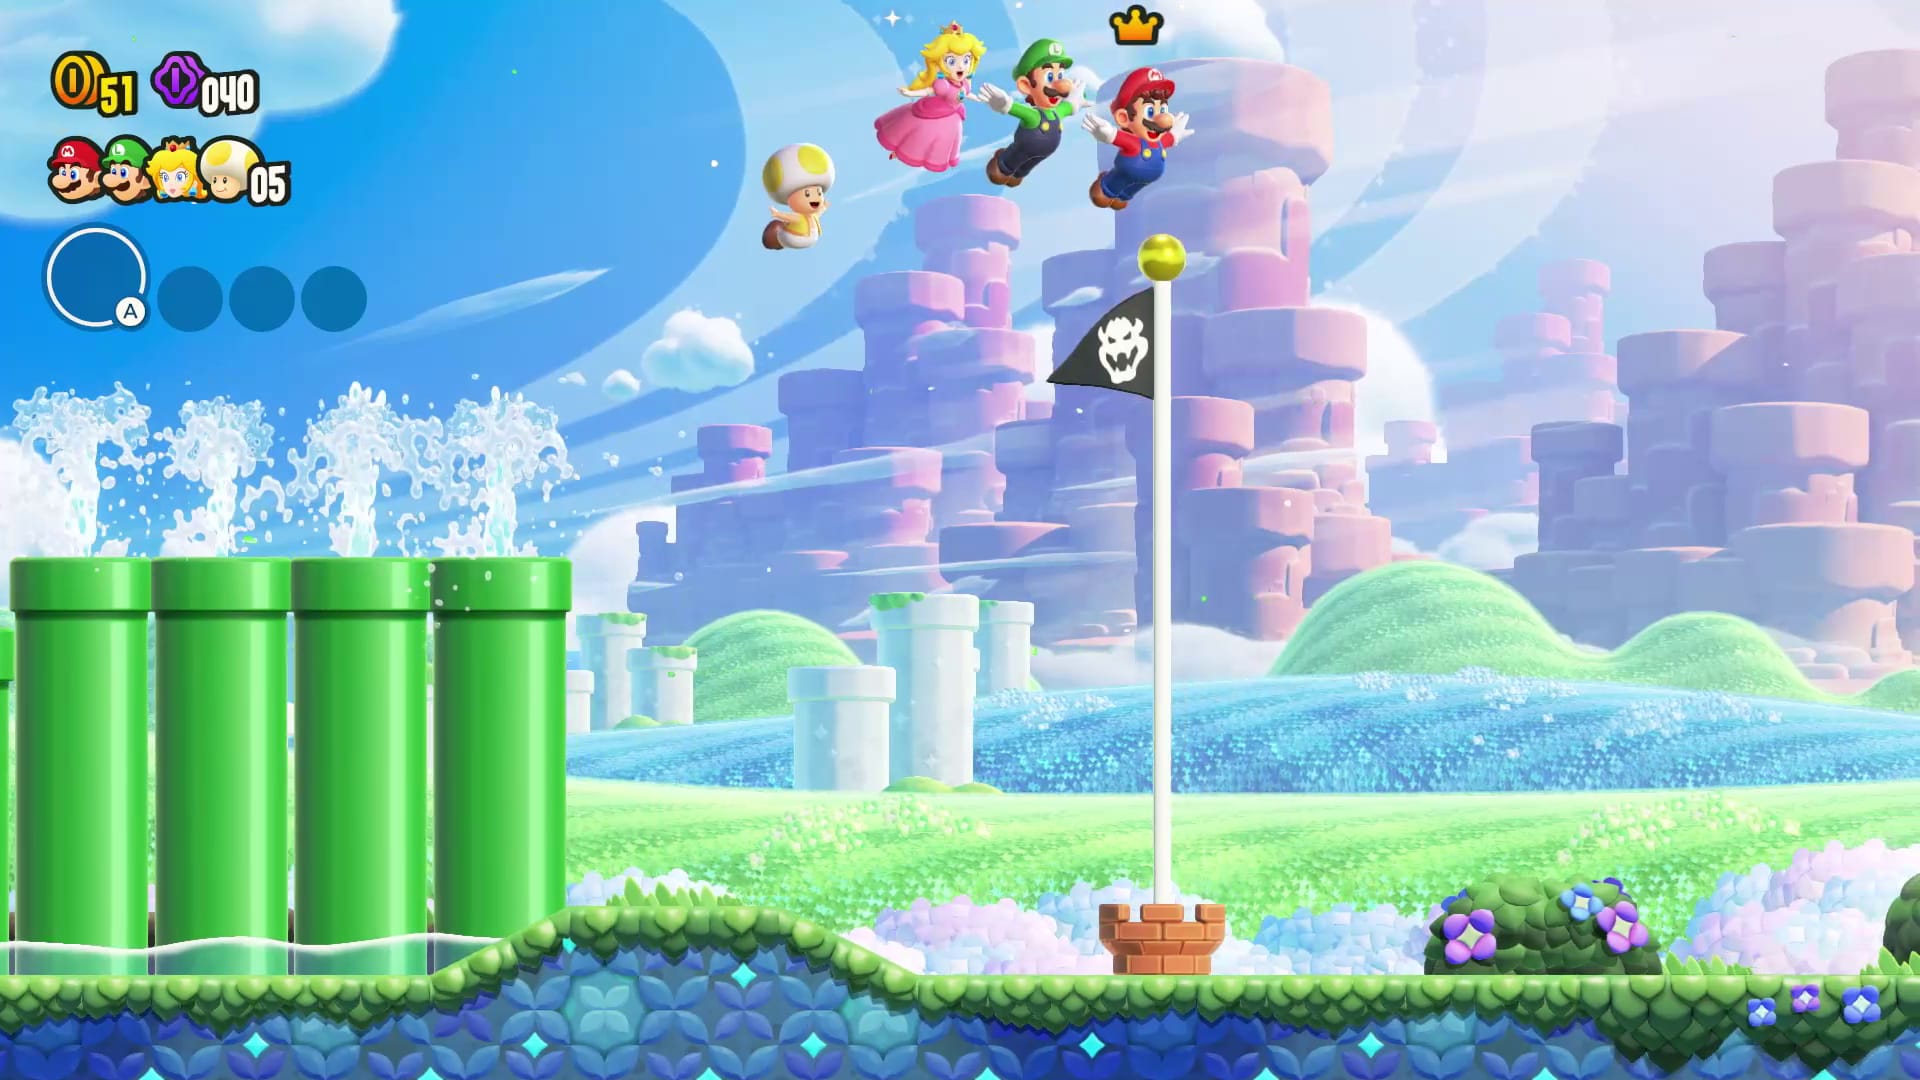 Super Mario Bros Wonder Nintendo Switch Digital - XBLADERGAMES